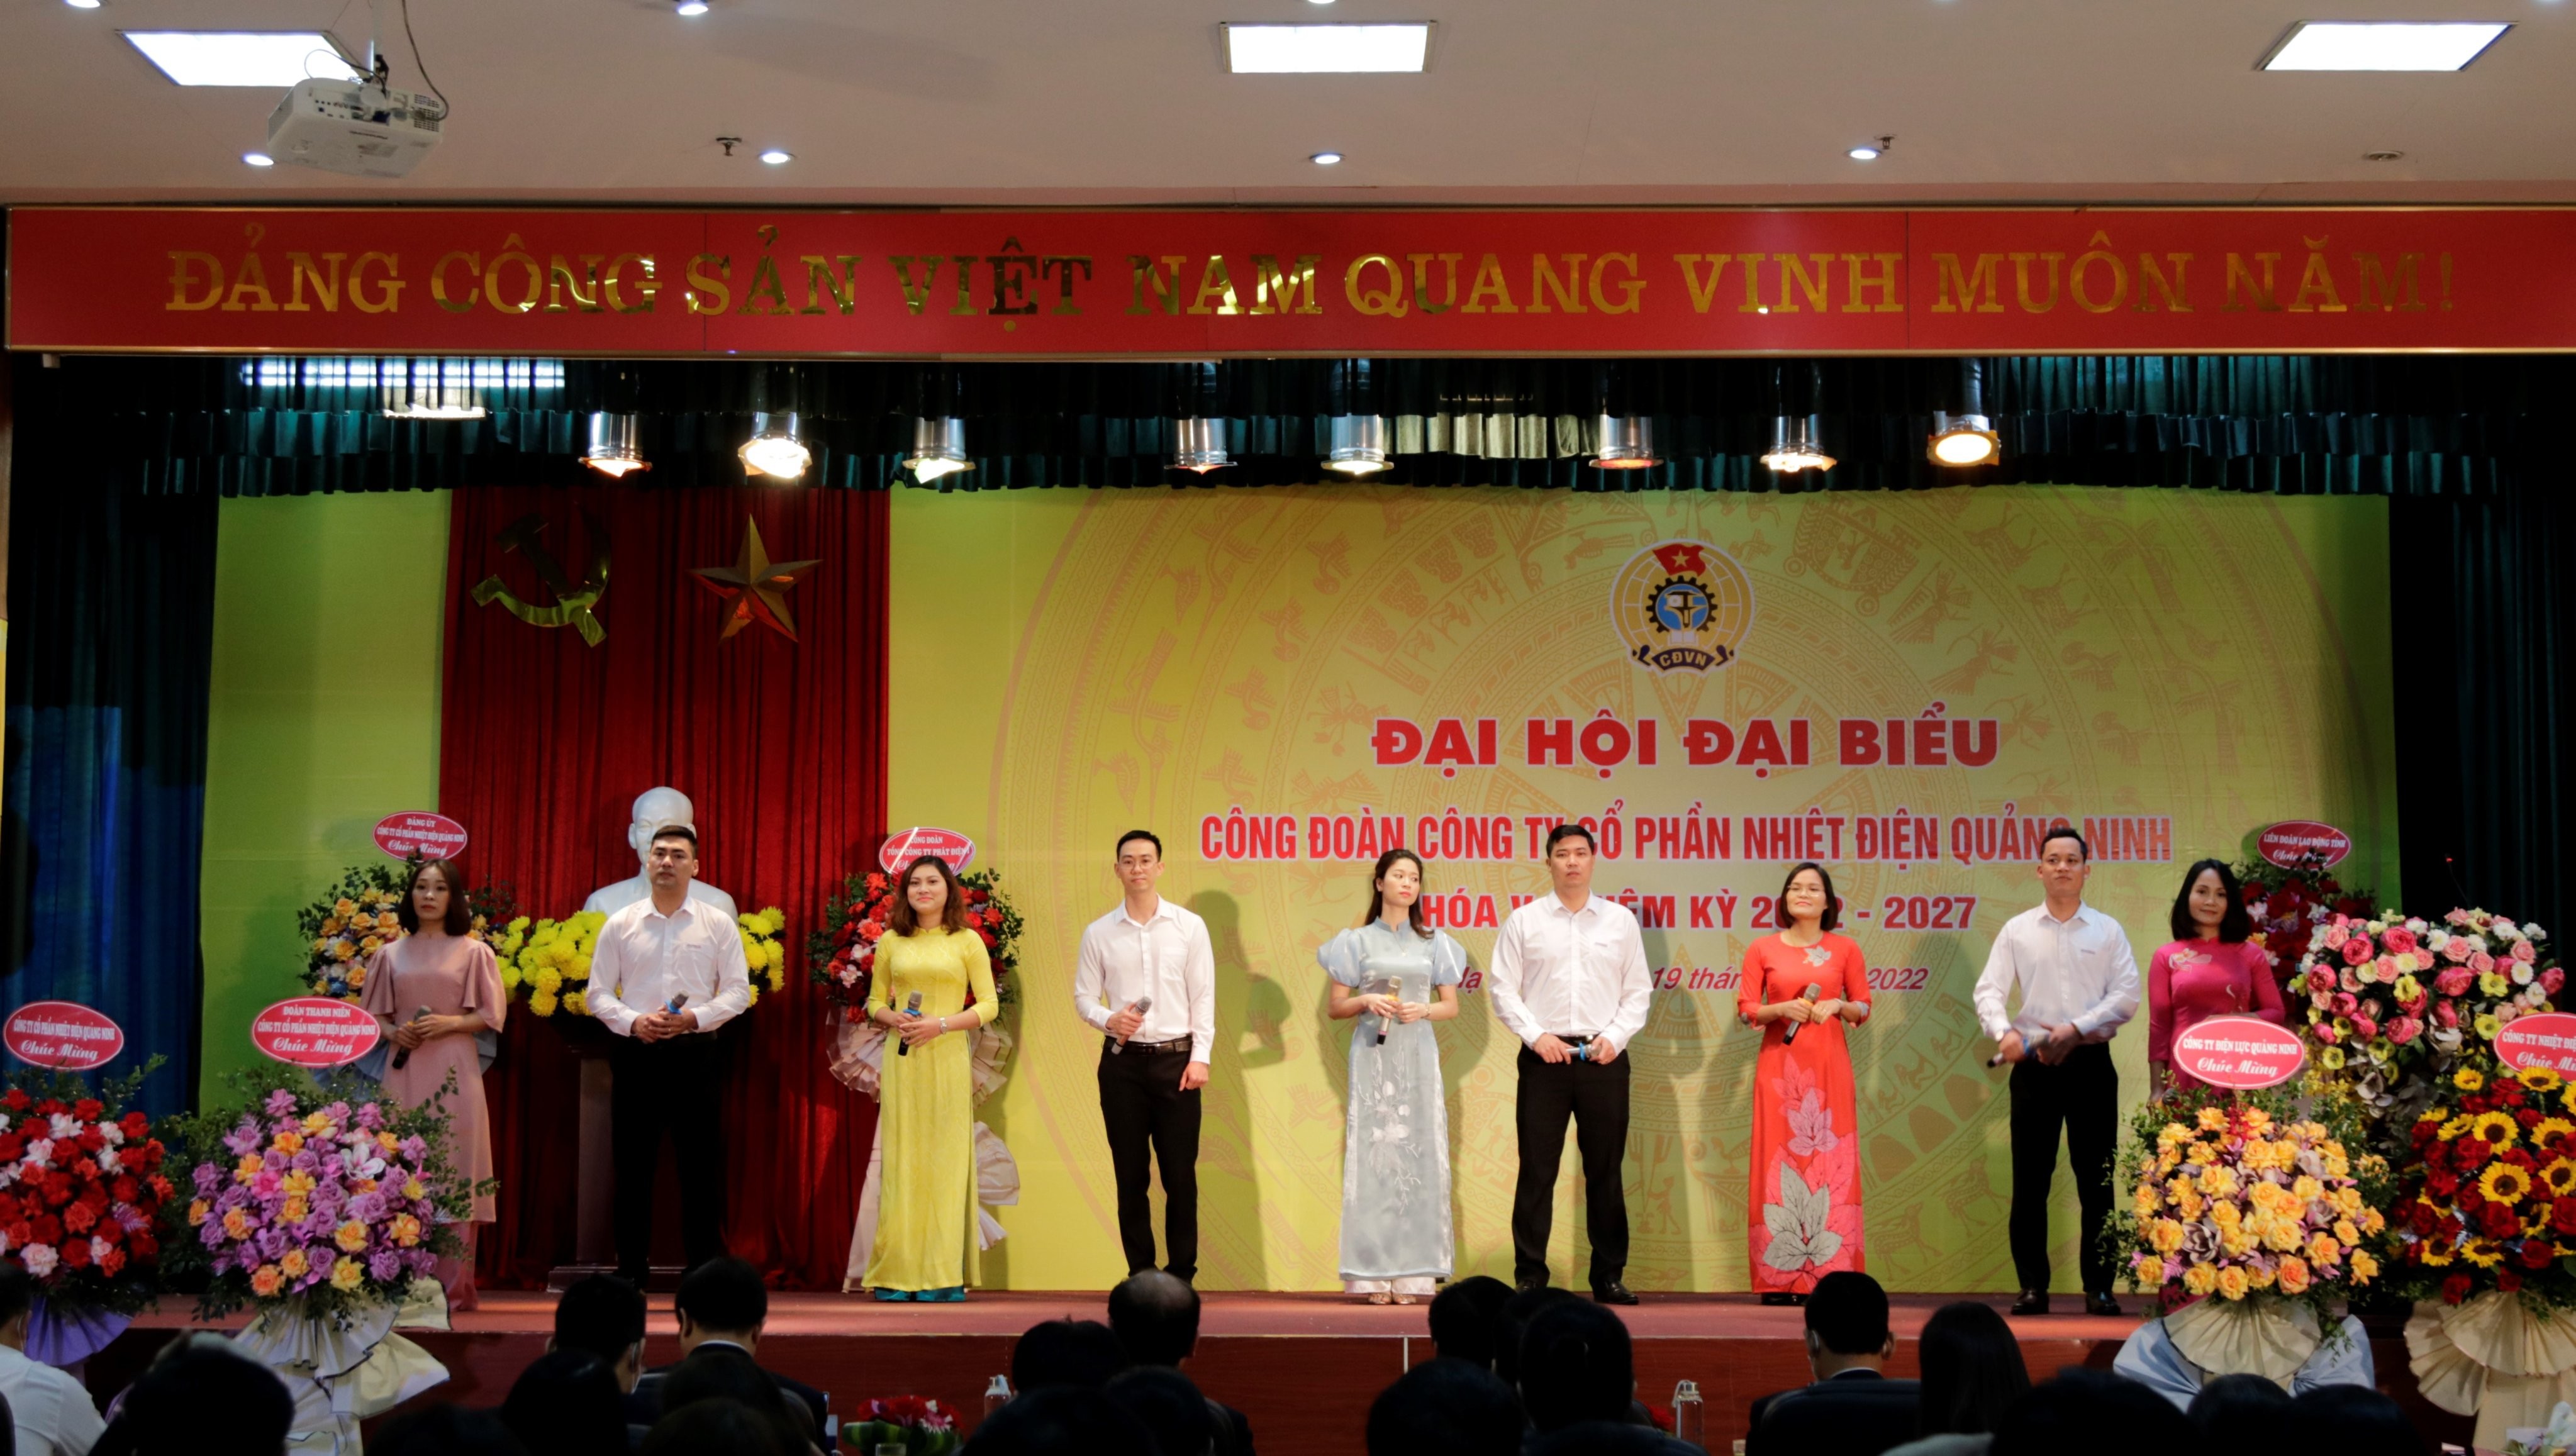 Nhiệt điện Quảng Ninh tổ chức thành công Đại hội đại biểu Công đoàn lần V (nhiệm kỳ 2022 - 2027)